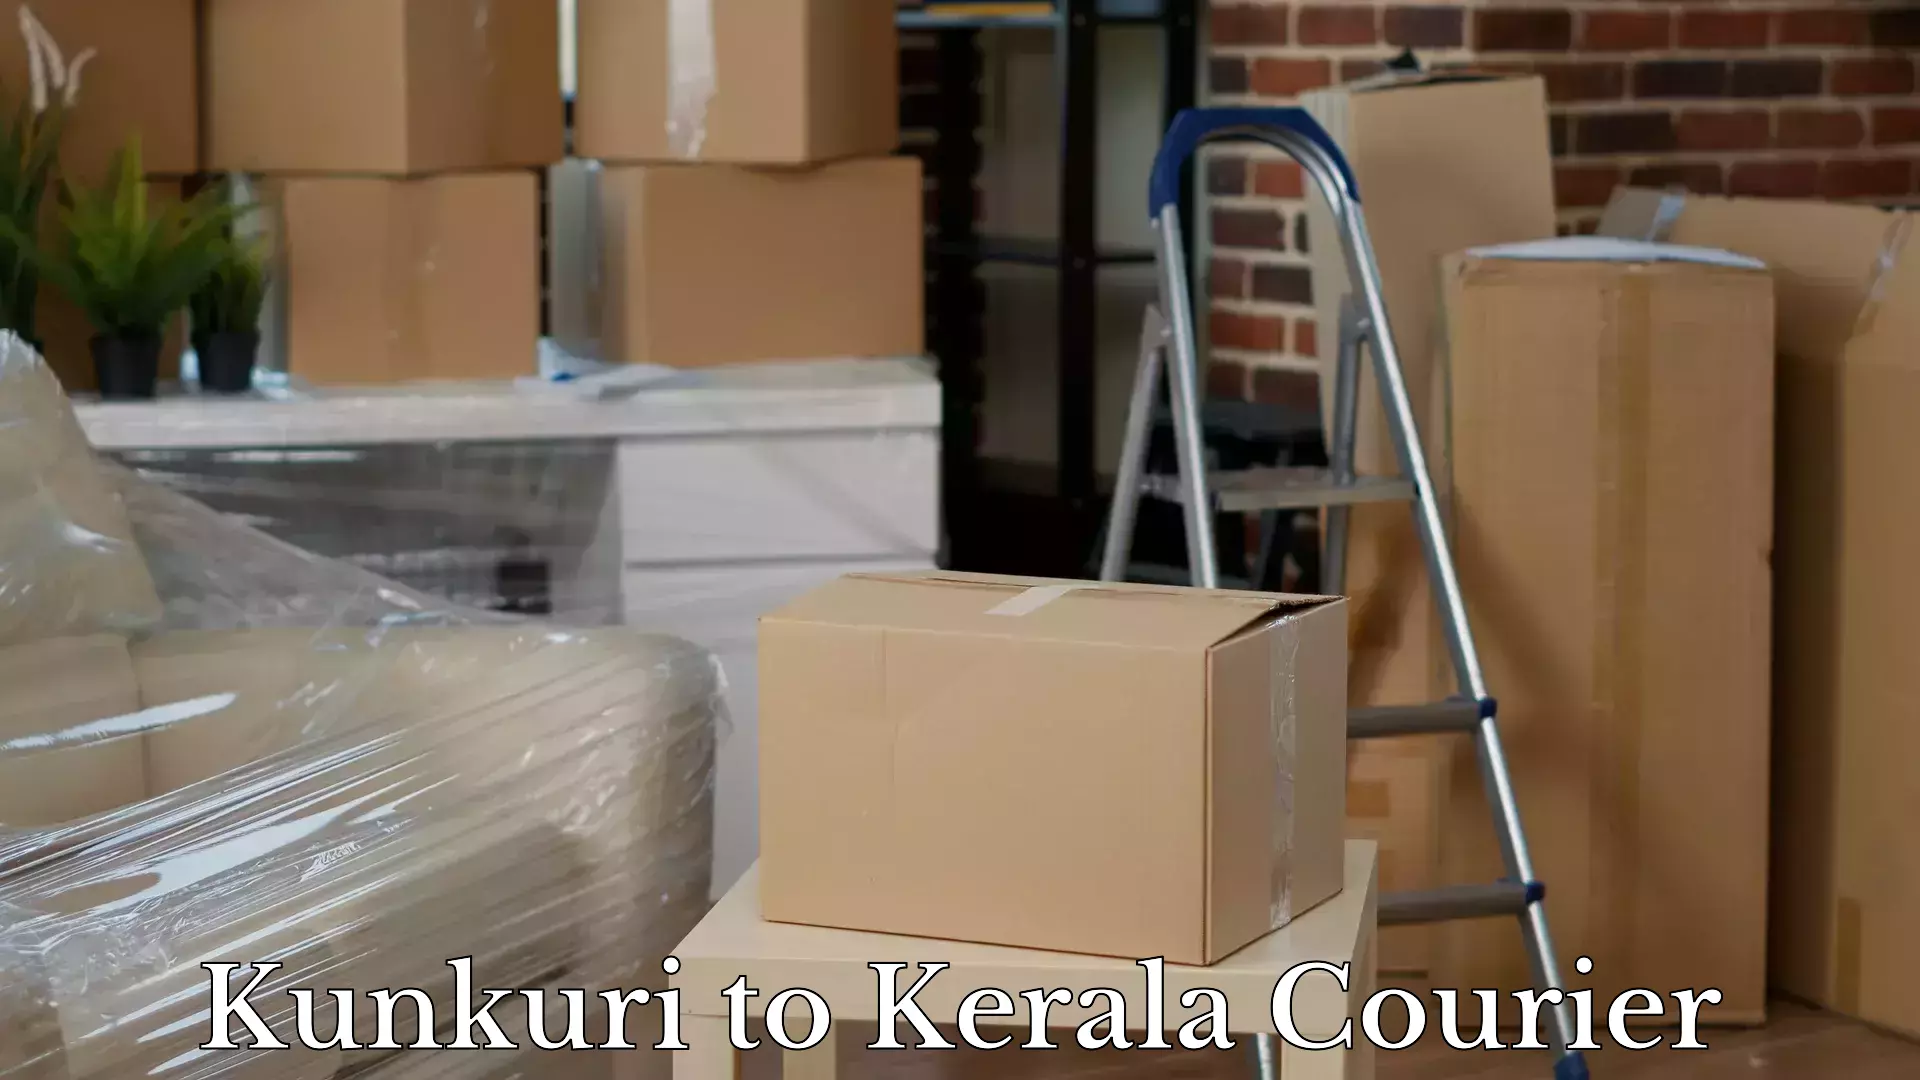 Luggage transfer service Kunkuri to Palakkad